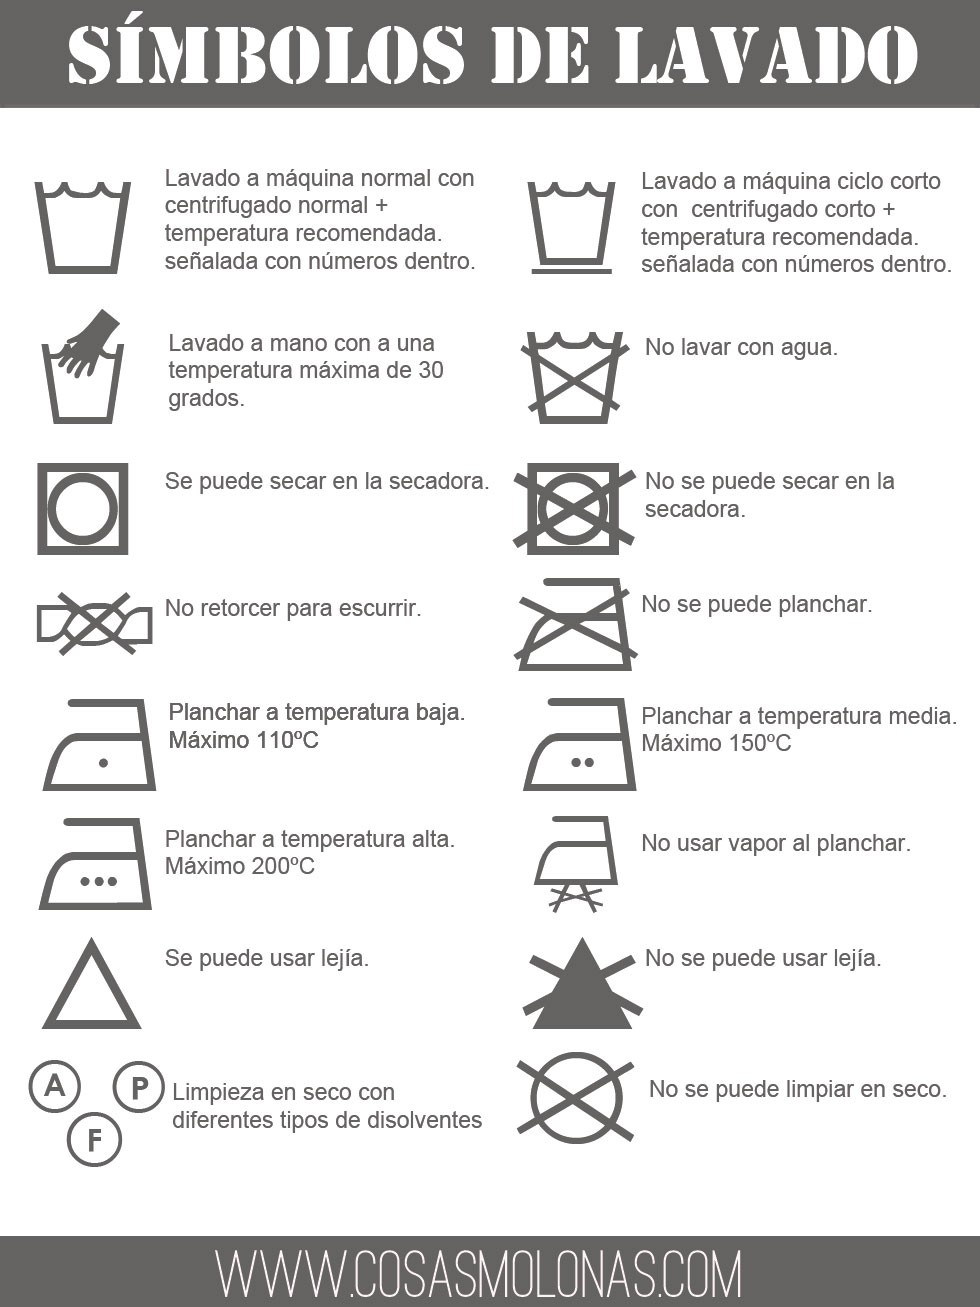 Imprimible: los símbolos lavado - Cosas Molonas